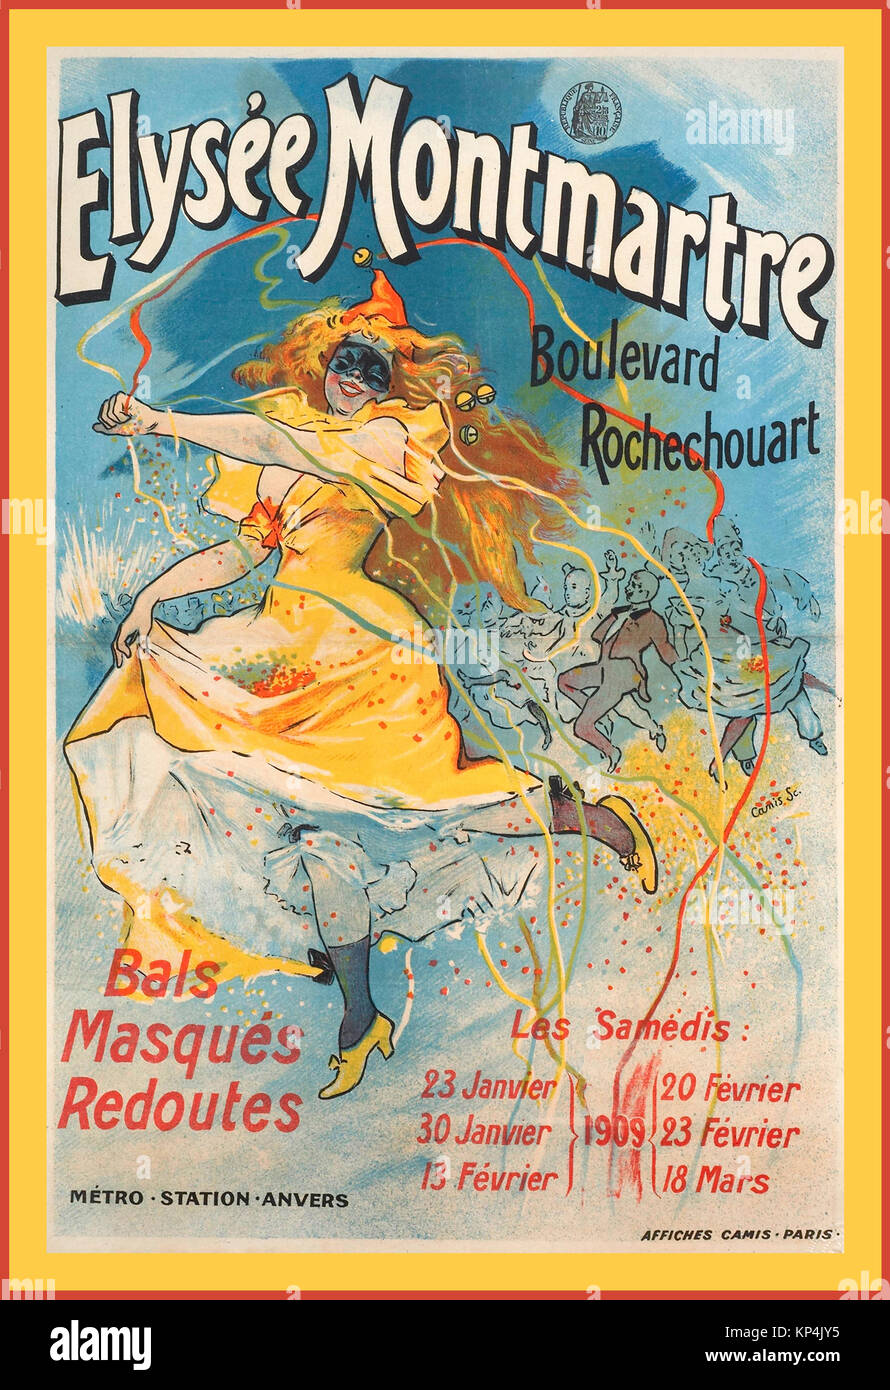 Elysee Montmartre 1900's Vintage Dance Entertainment Nightclub Poster Paris salle de danse parisienne Elysee Montmartre 1904 tenant un bal masqué Belle époque Paris France Banque D'Images